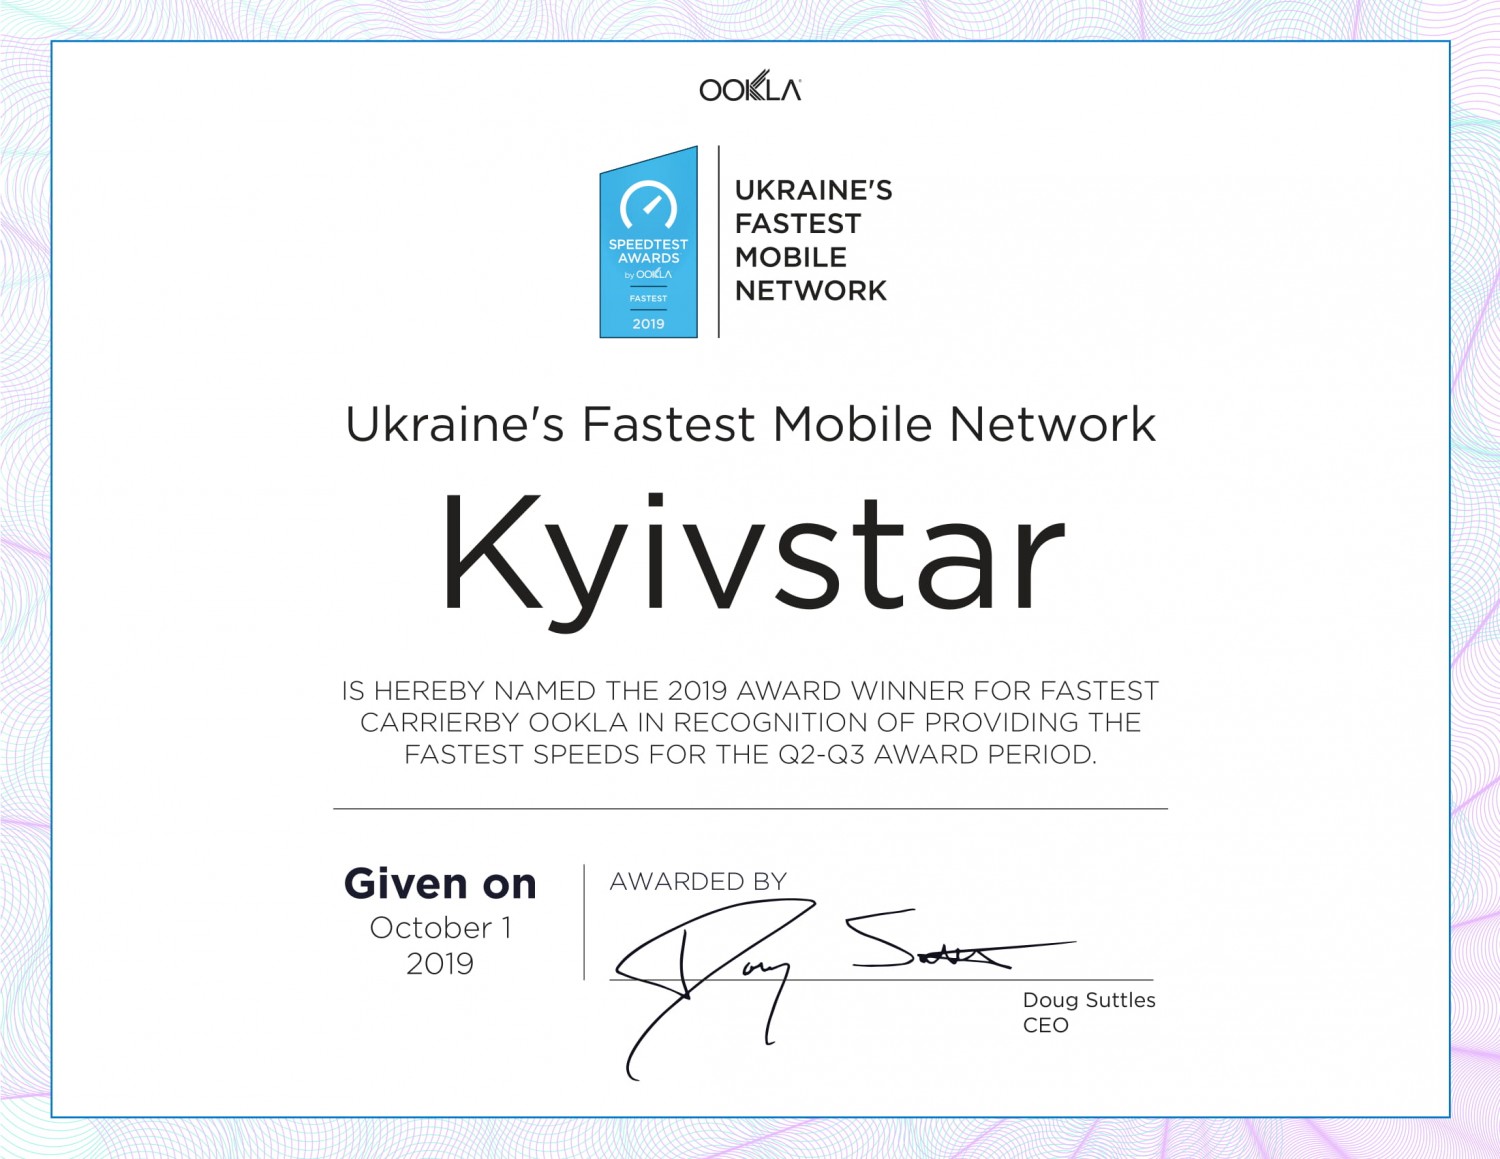 Дані Speedtest від Ookla: швидкість мобільного інтернету в Україні зросла, Київстар є лідером